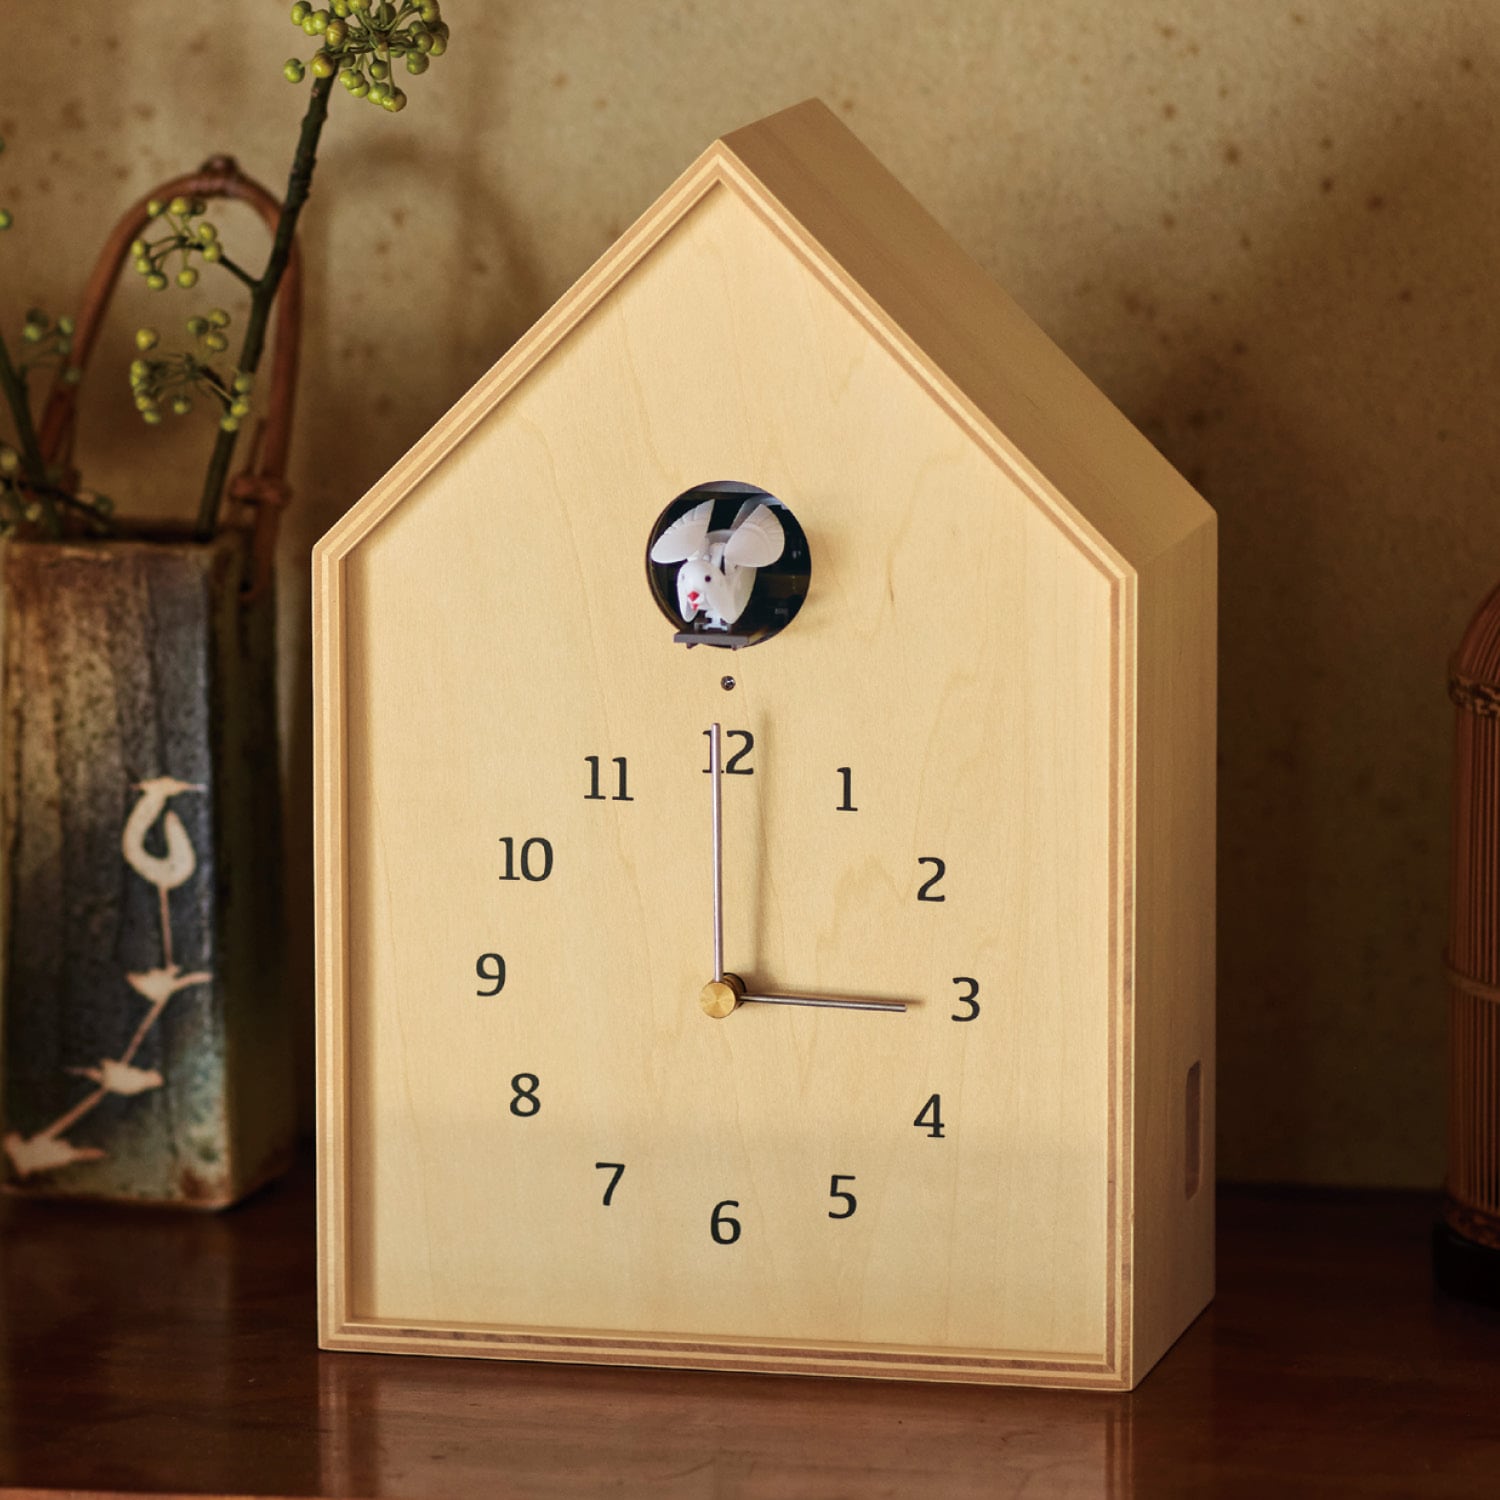 【レムノス/Lemnos】おしゃれなカッコー時計「Birdhouse Clock」[日本製]